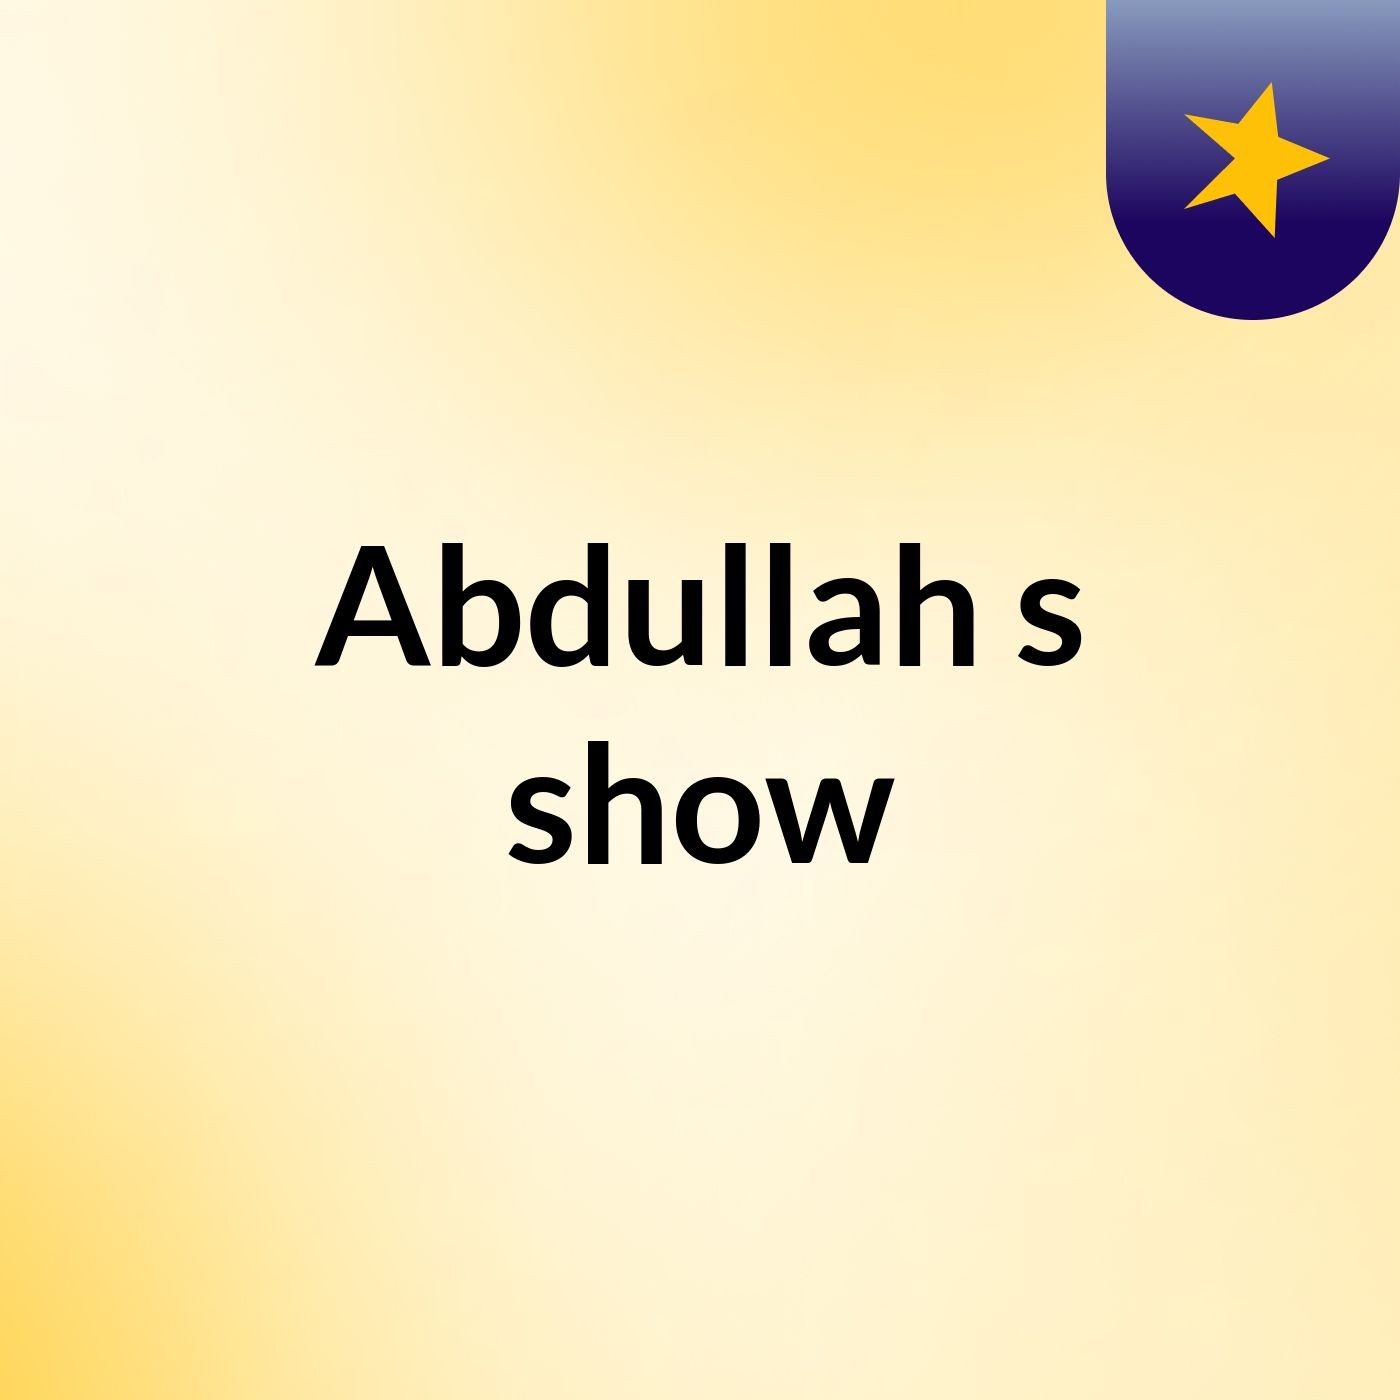 Abdullah's show